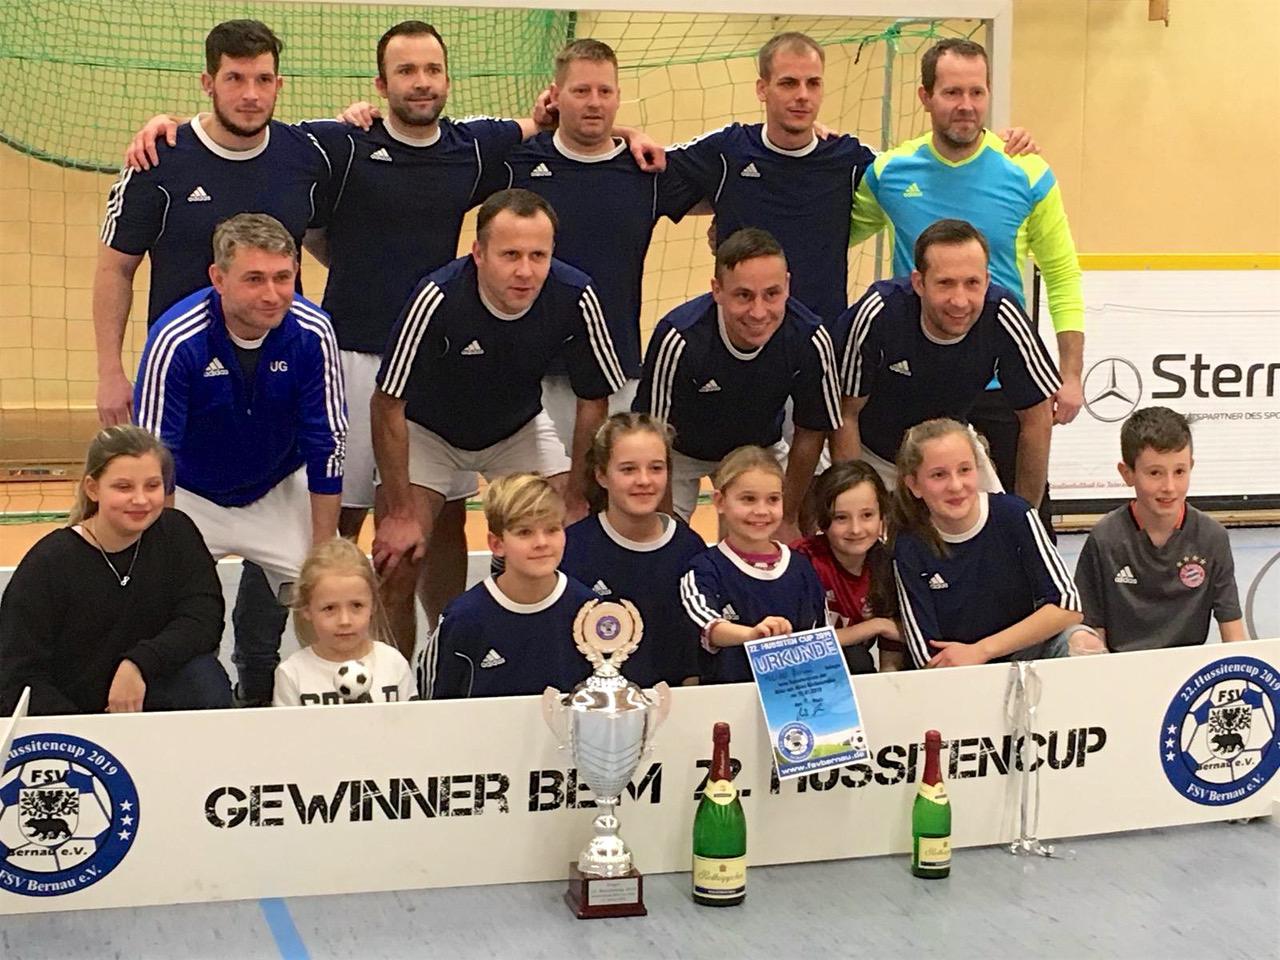 Hussitencup 2019 - Barnimer Polizei gewinnt den Sponsoren Cup